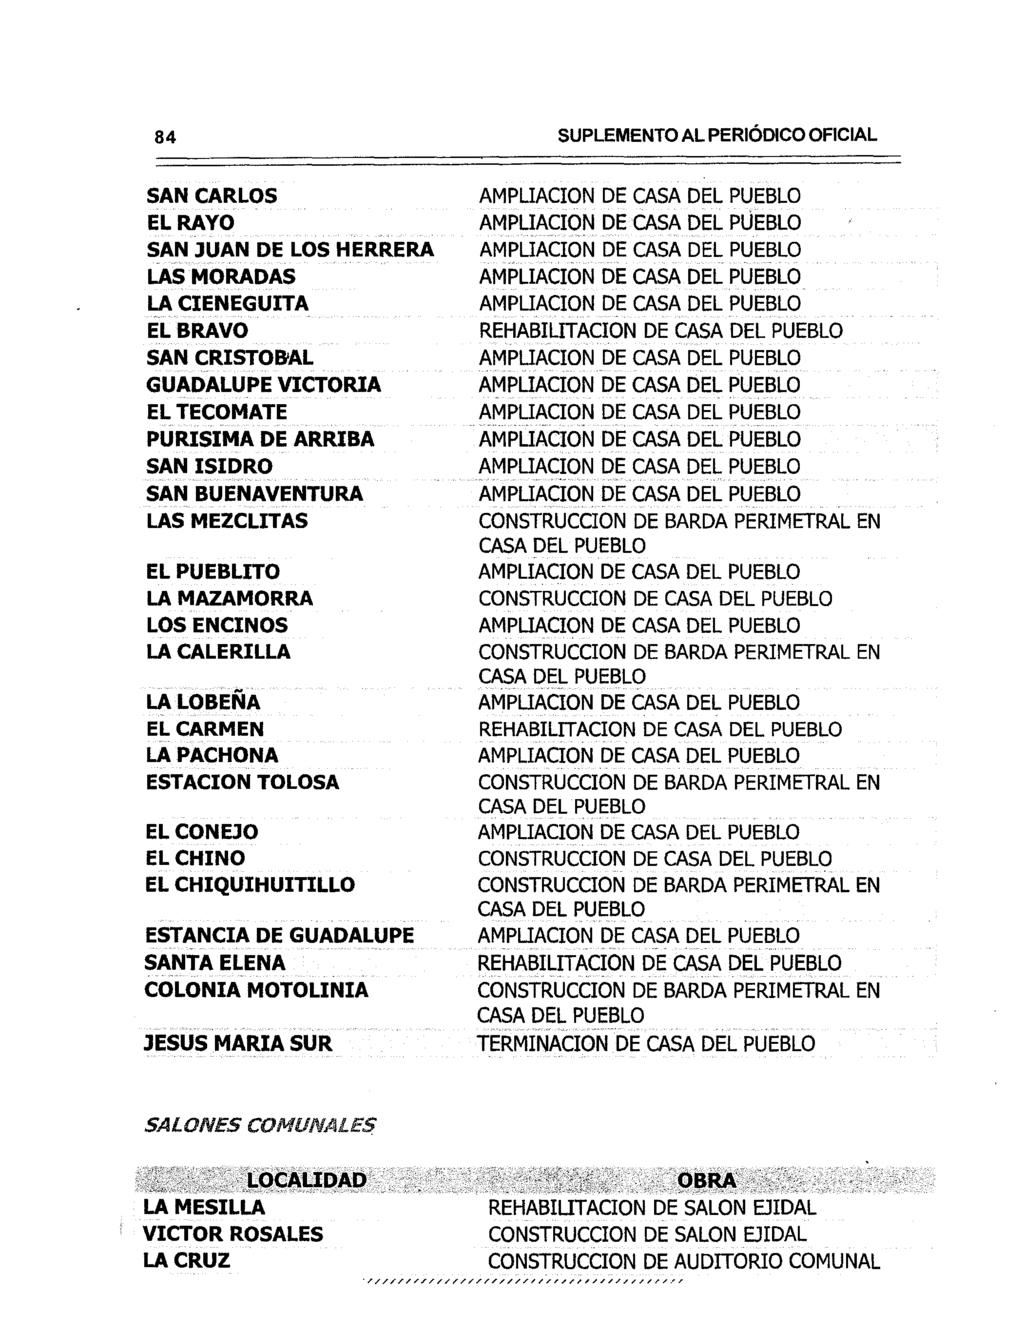 84 SUPLEMENTO AL PERiÓDICO OFICIAL SAN CARLOS EL RAYO SAN JUAN DE LOS HERRERA LAS MORADAS LA CIENEGUITA EL BRAVO SAN CRISTOB'AL GUADALUPEVICTORIA EL TECOMATE PURISIMA DE ARRIBA SAN ISIDRO SAN